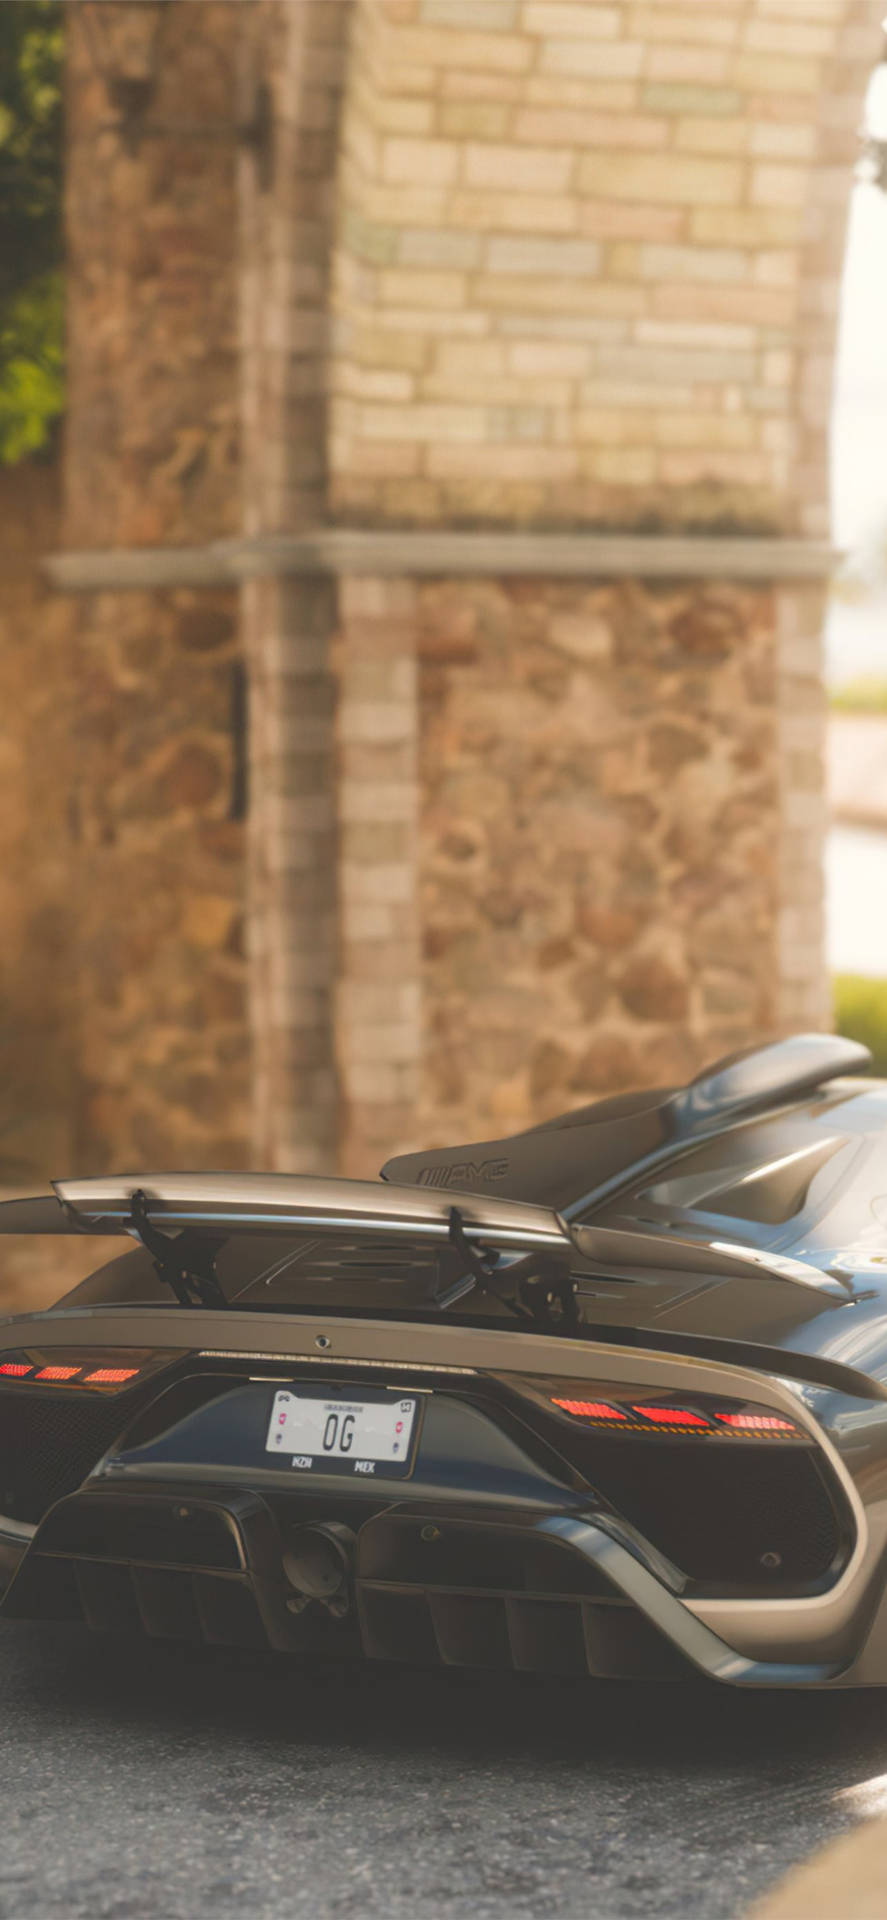 Revved Up Engine - Black Lamborghini Sesto Elemento Background